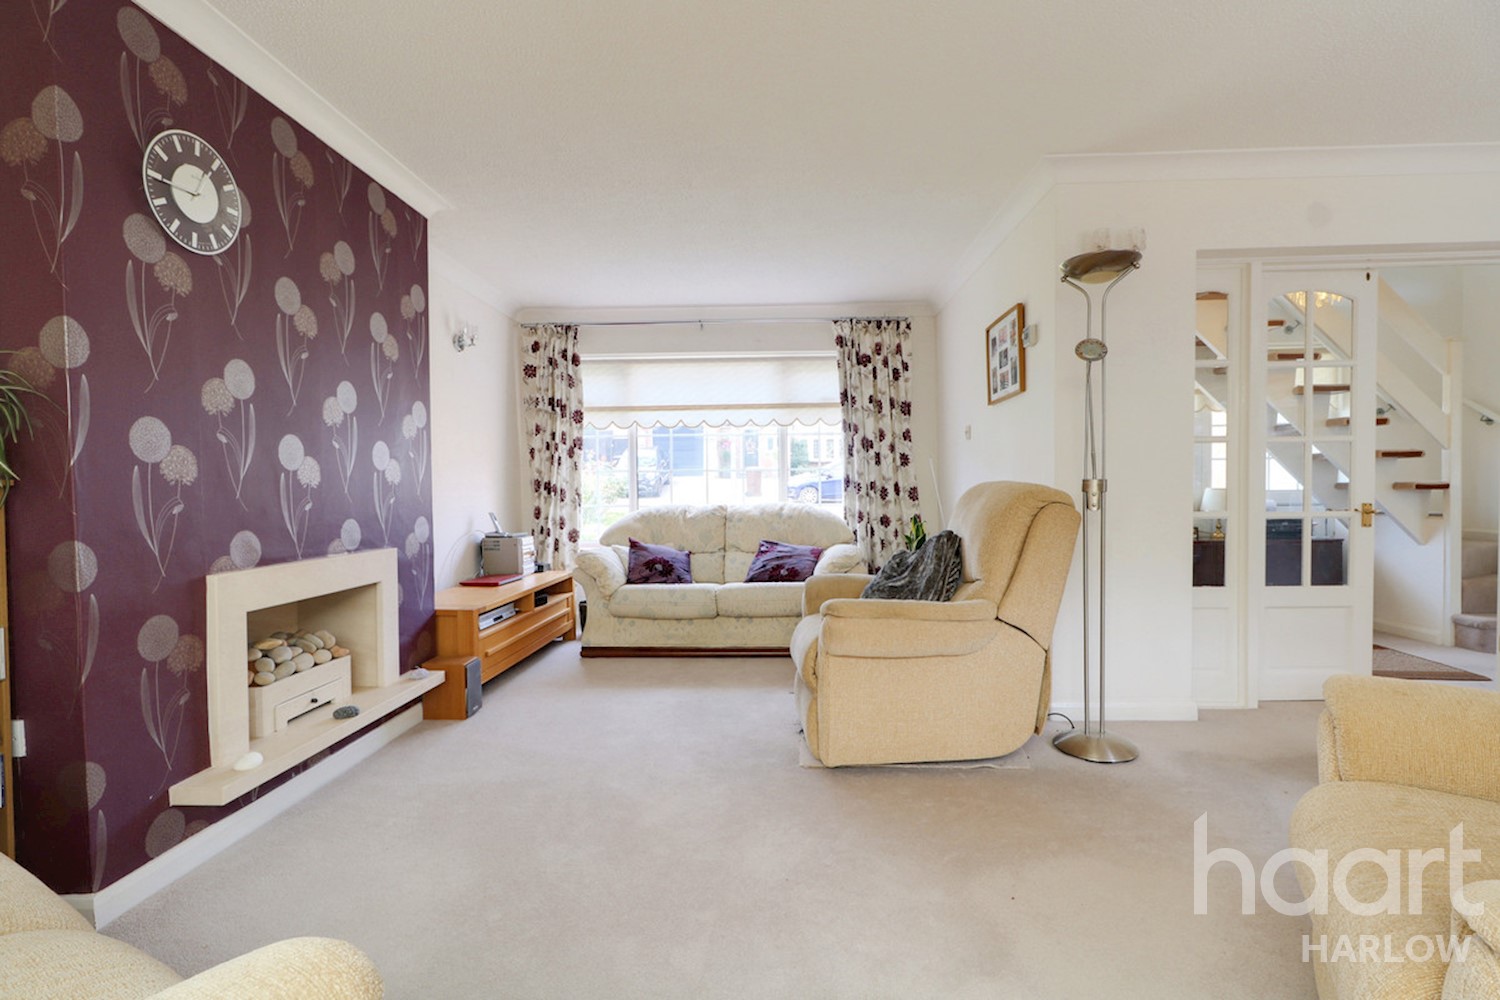 3 bedroom Semi-Detached House | Kingsland, Harlow | £425,000 | haart